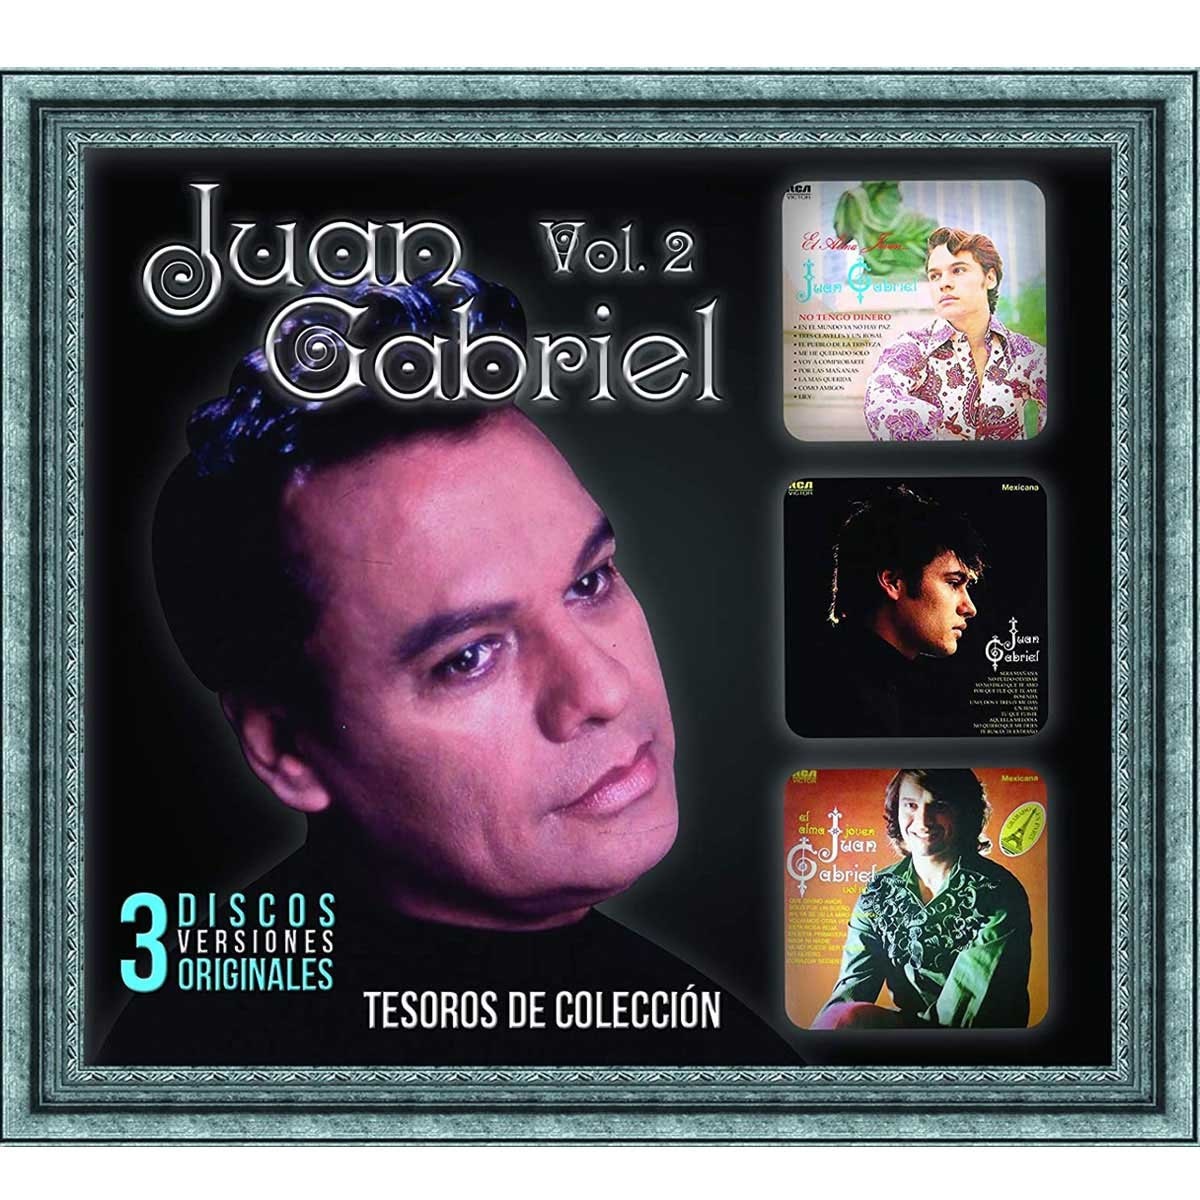 3 Cd's Juan Gabriel Tesoros de Colección Vol. 2